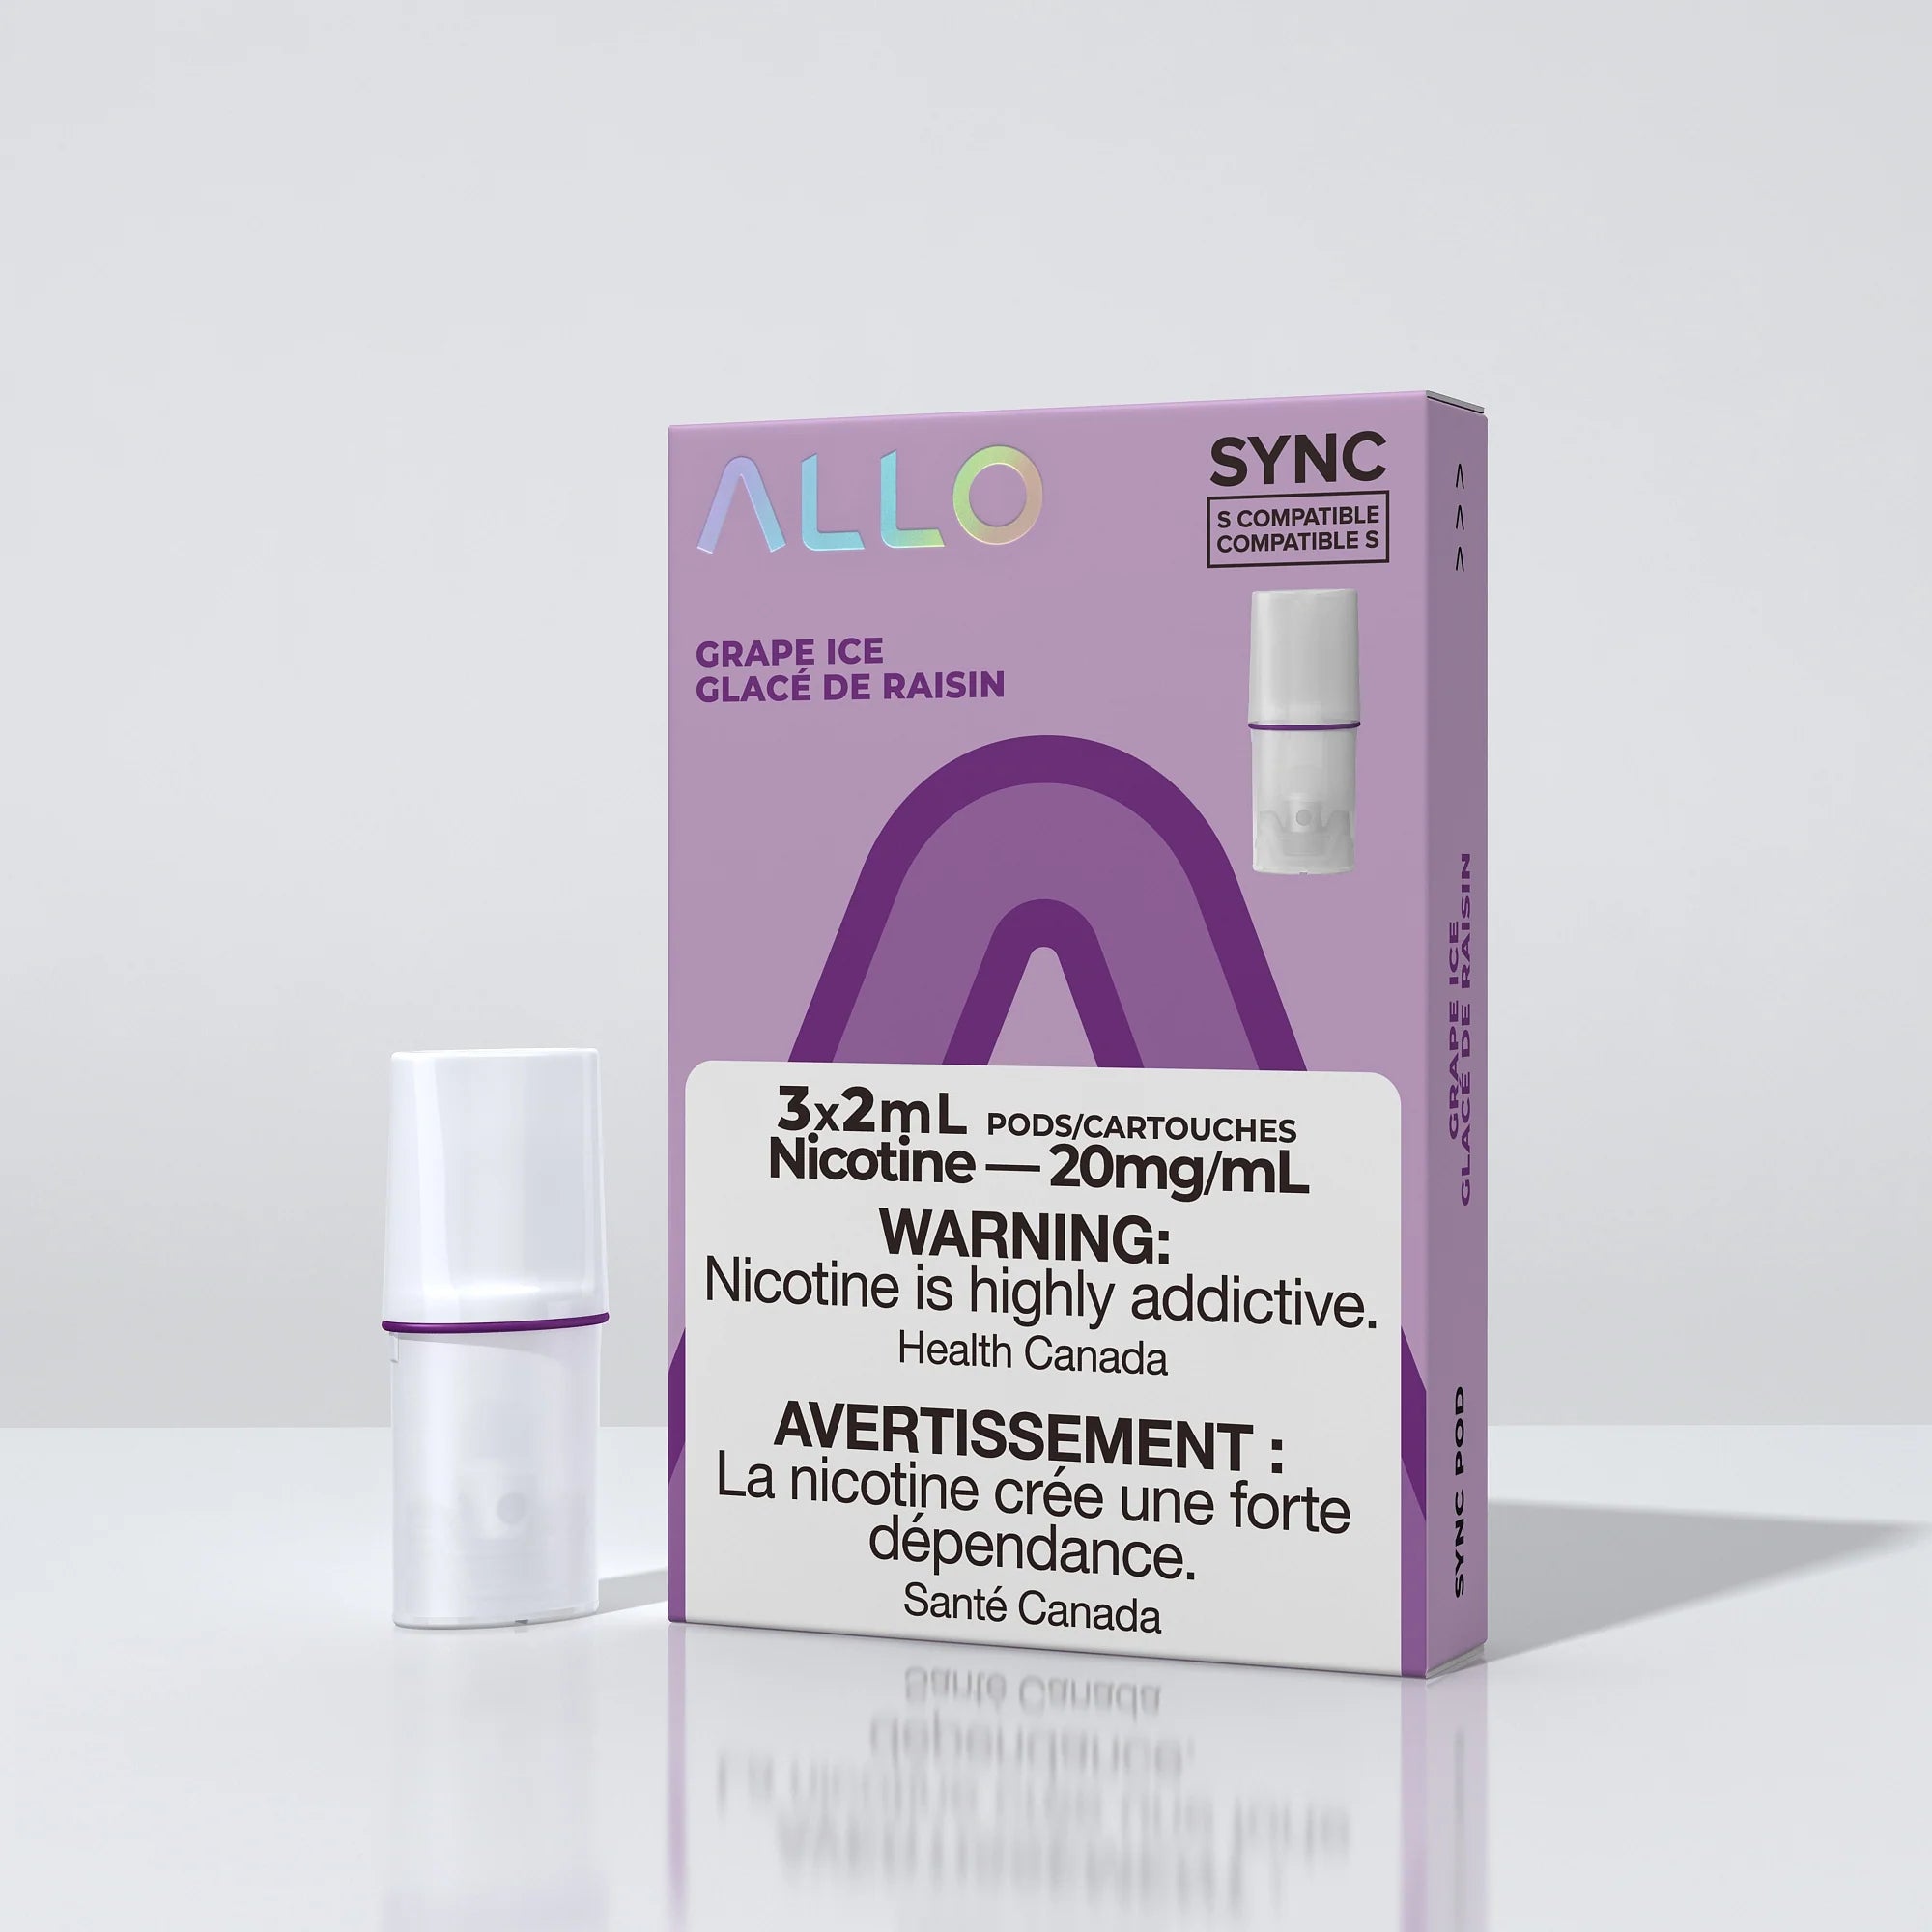 Allo Sync Pod Pack (S-Compatible)